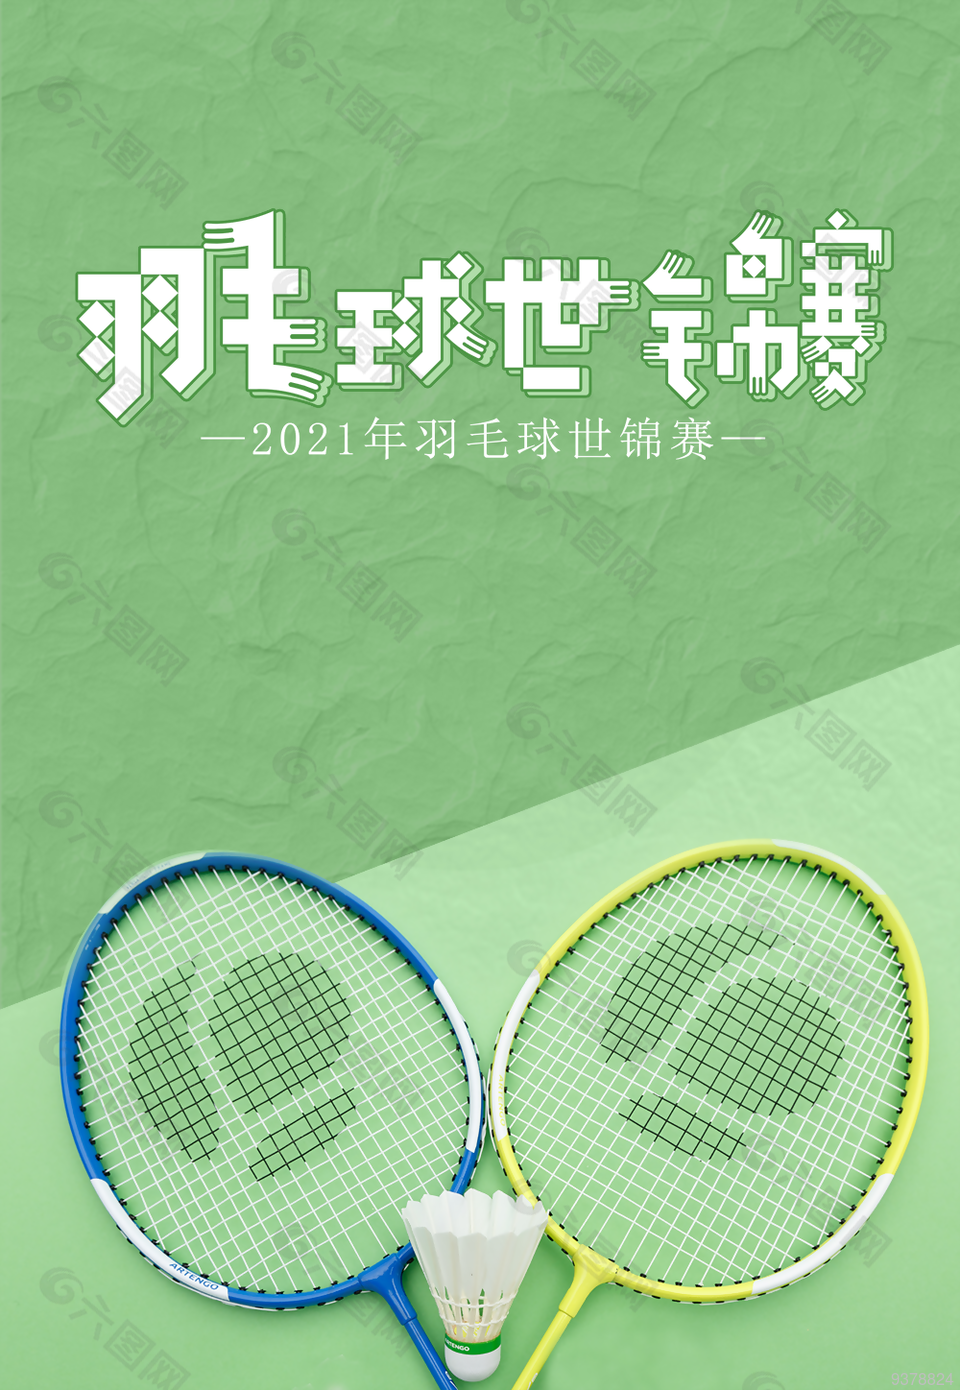 羽毛球世锦赛宣传图片